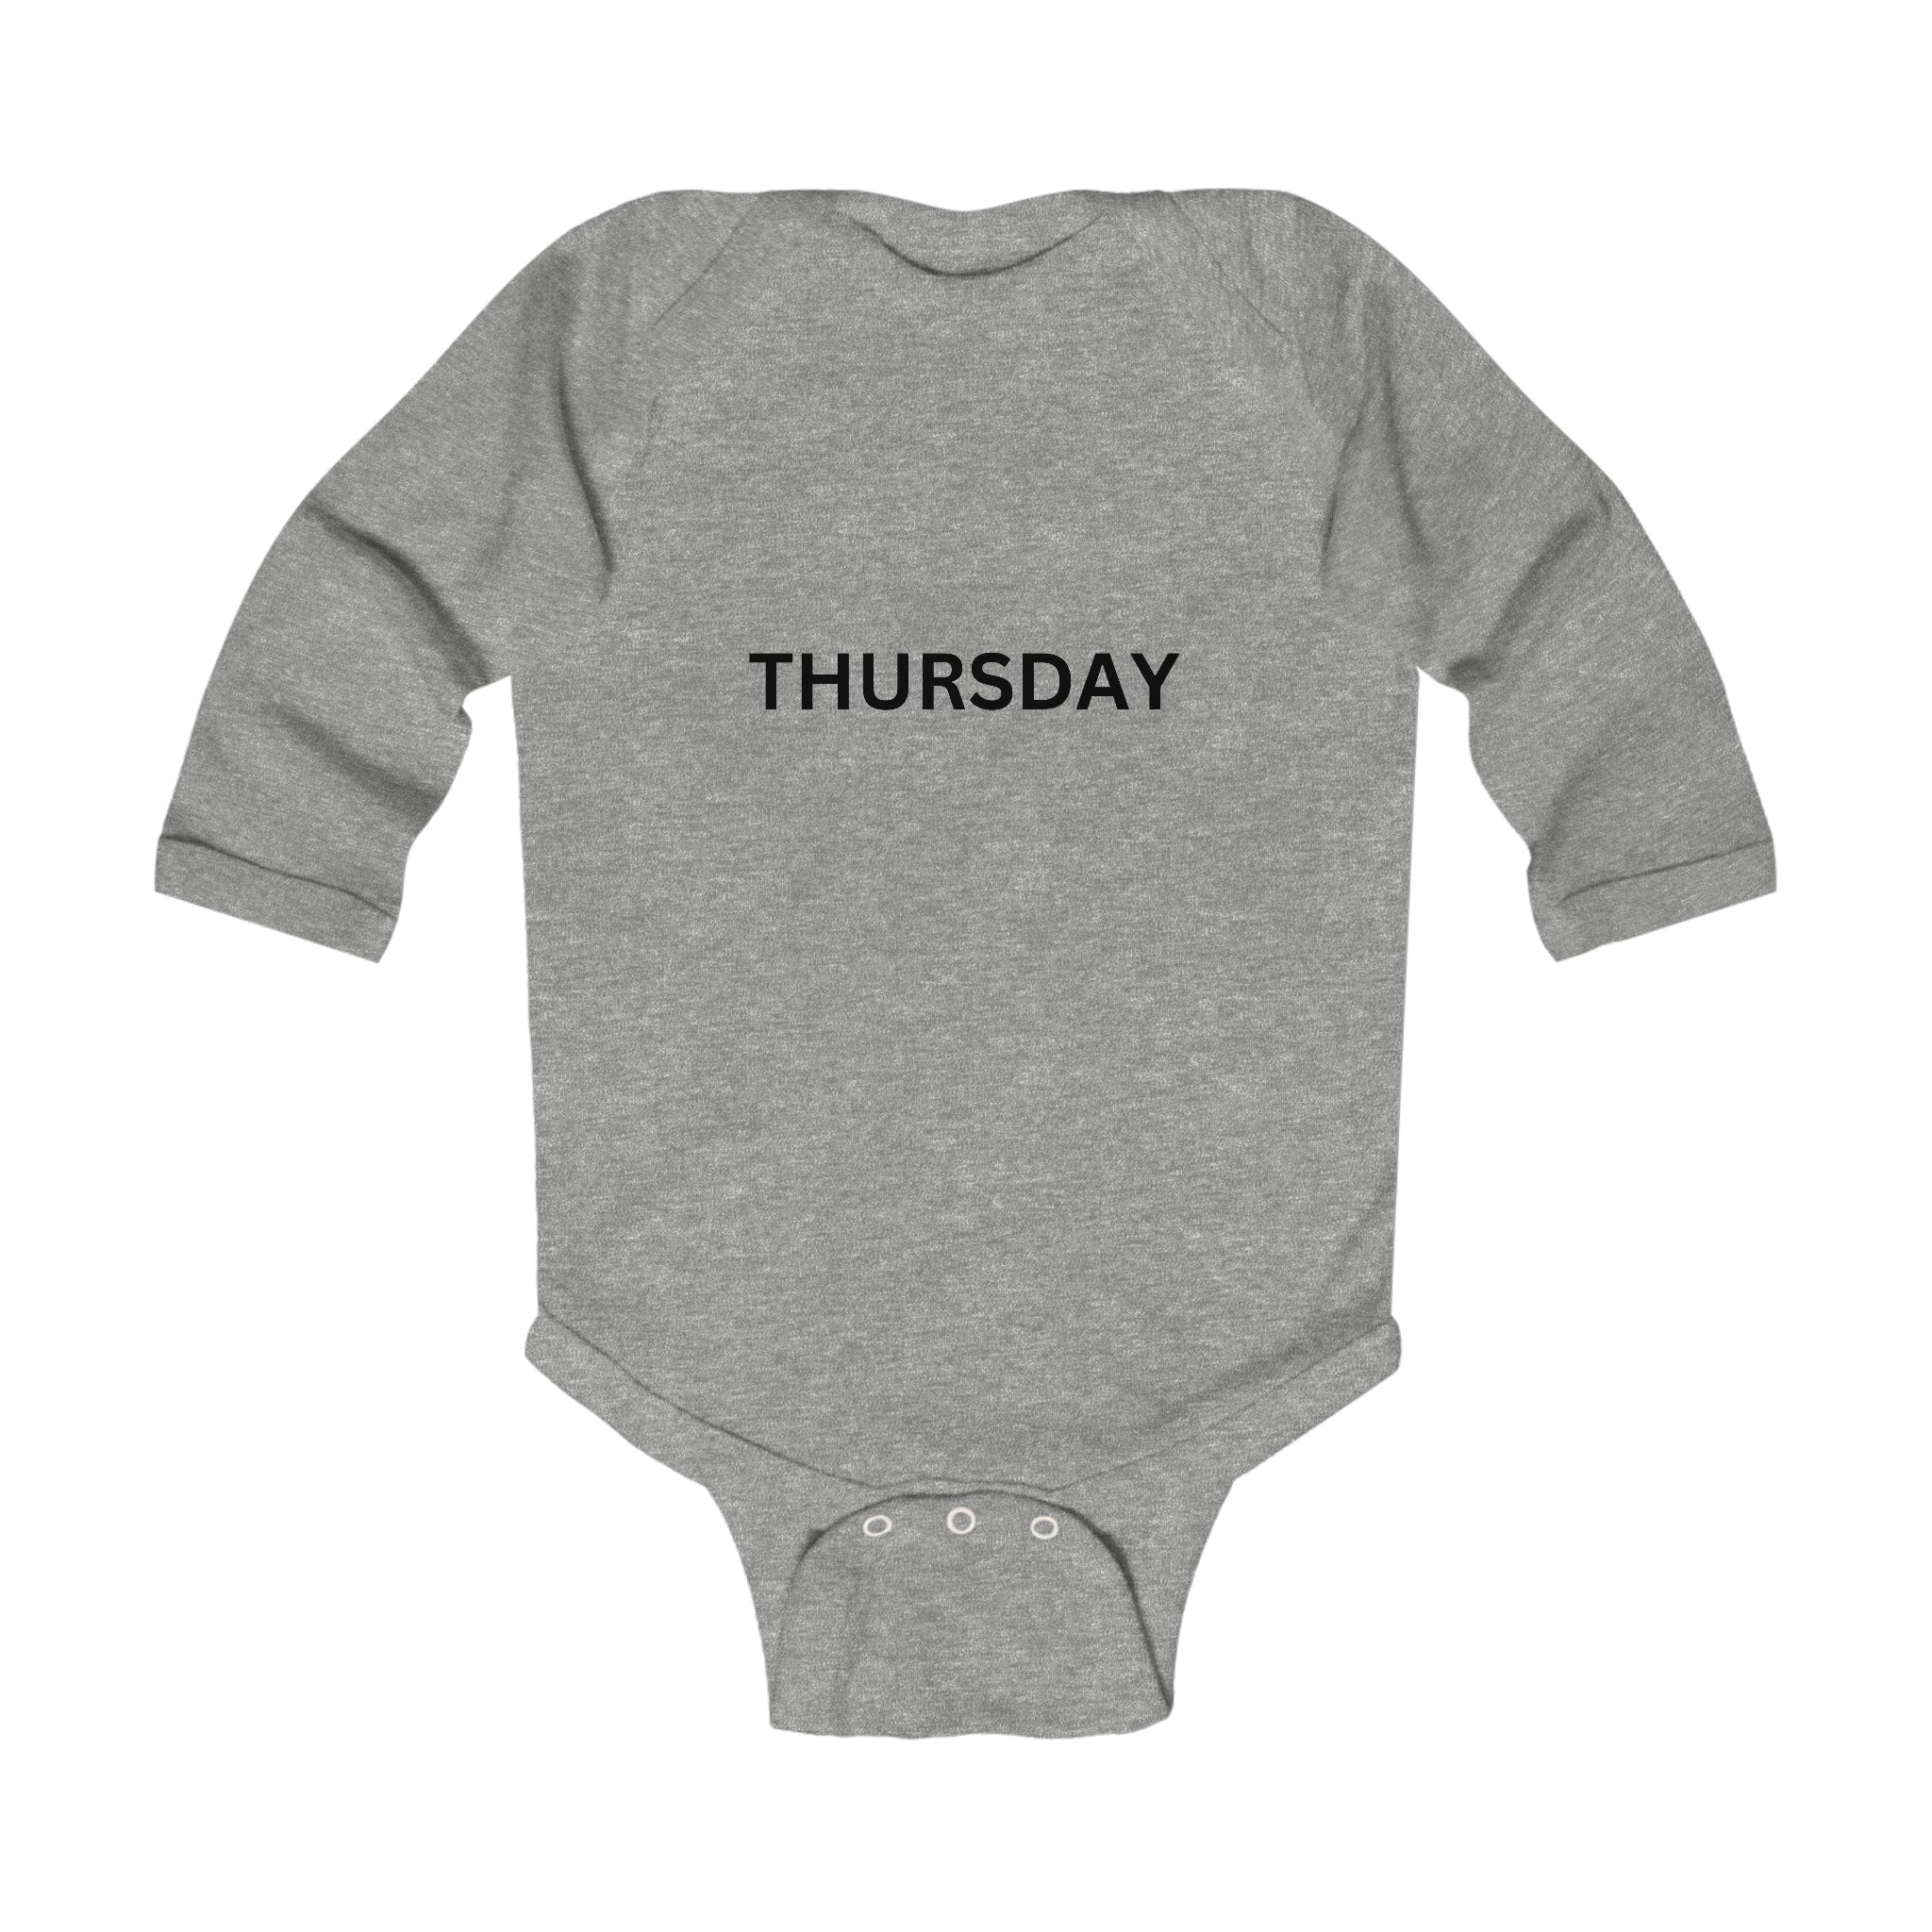 Thursday Long Sleeve Baby Bodysuit